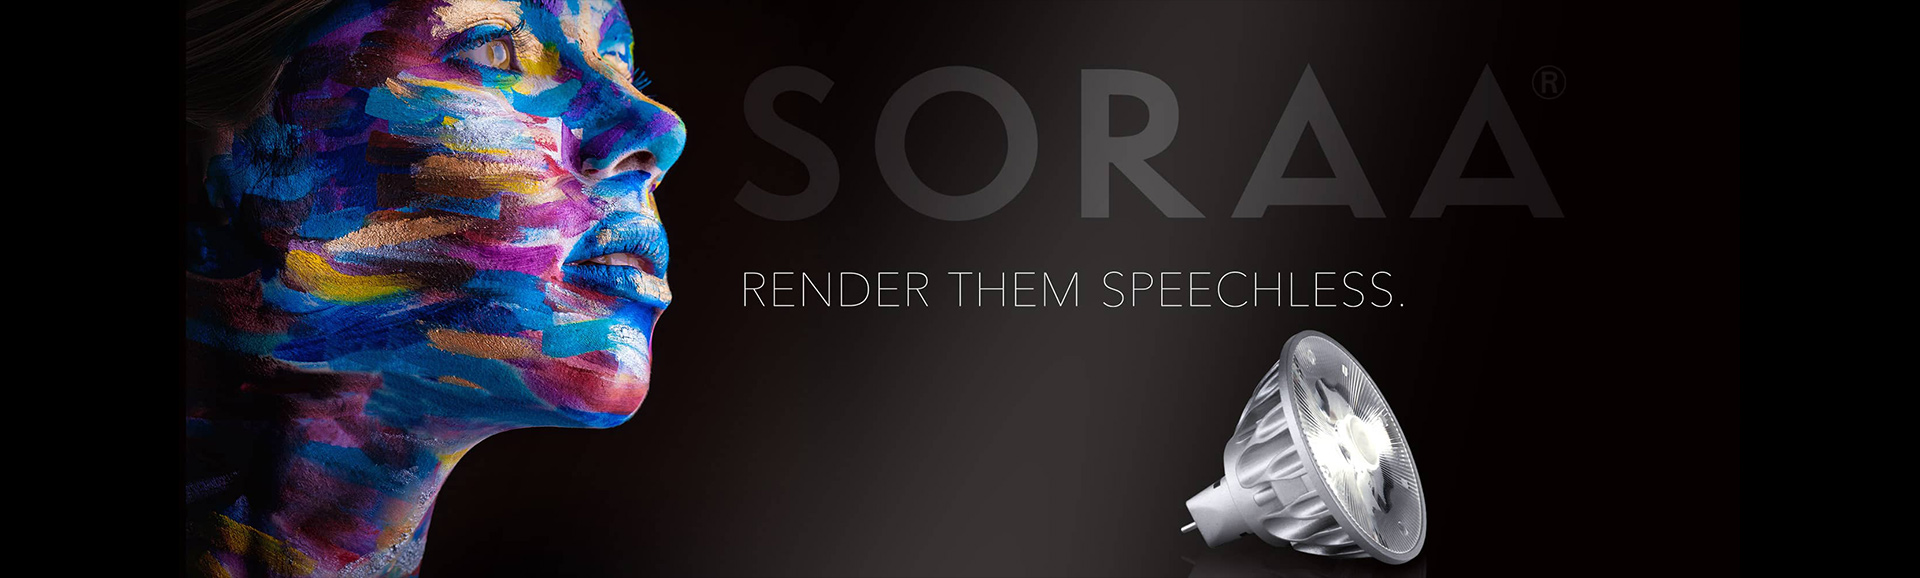 Soraa branding